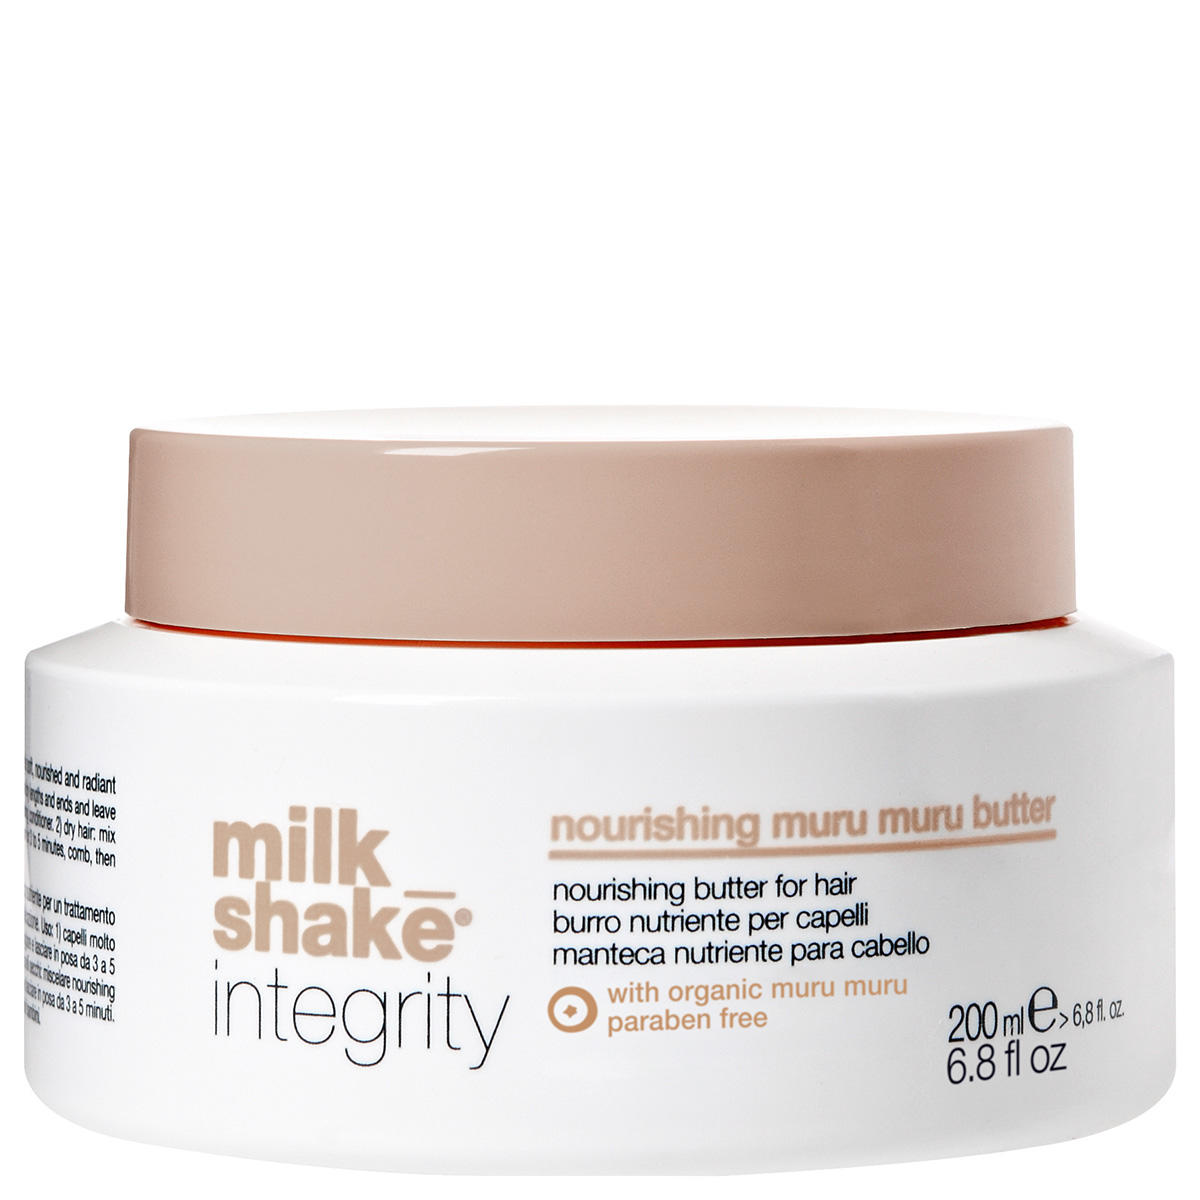 milk_shake integrity nourishing muru muru butter 200 ml